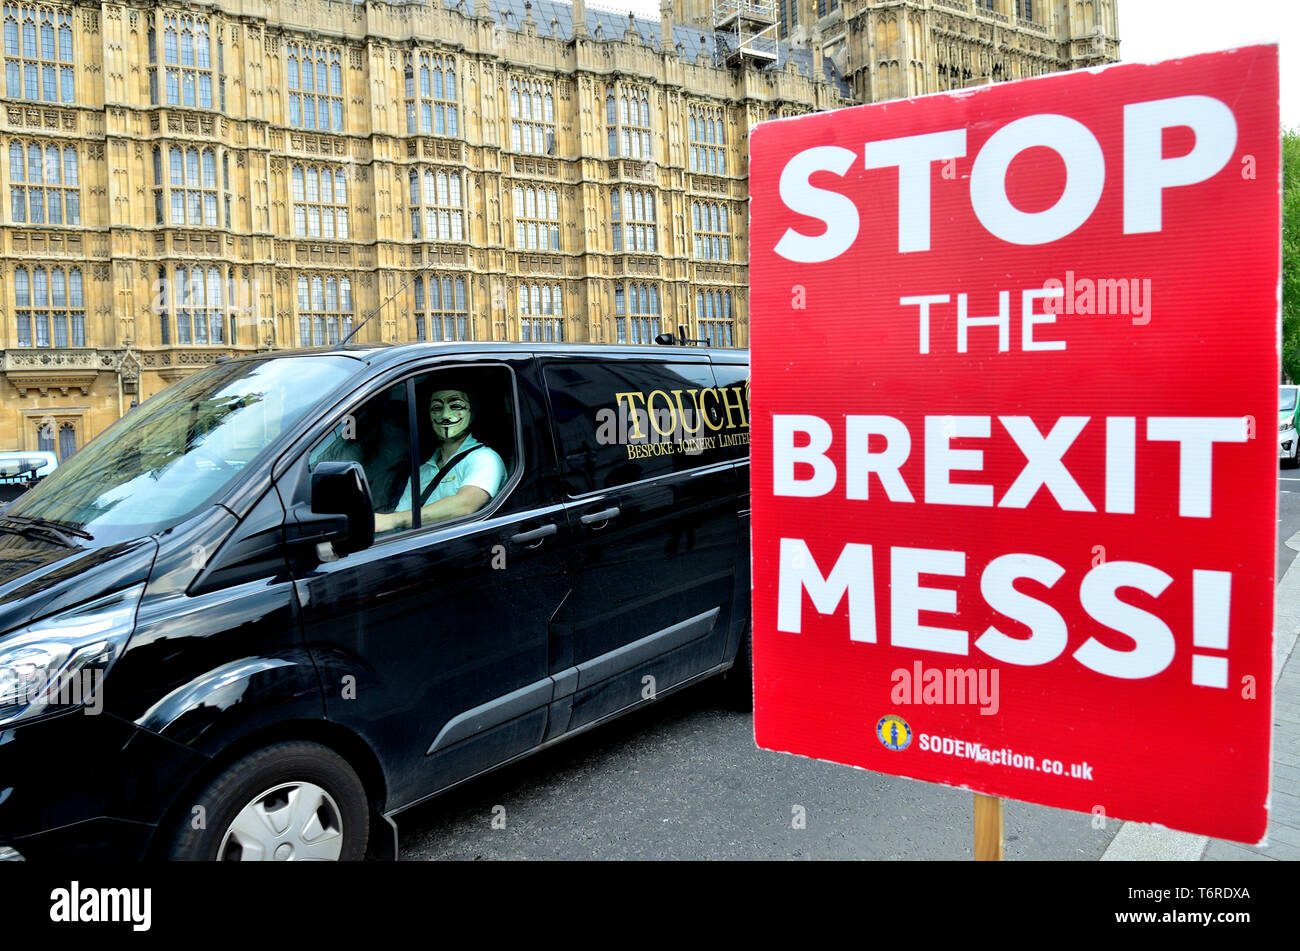 Londres, Angleterre, Royaume-Uni. Un homme portant un masque de V pour Vendetta dans le siège passager d'un van, en passant devant les Chambres du Parlement Banque D'Images